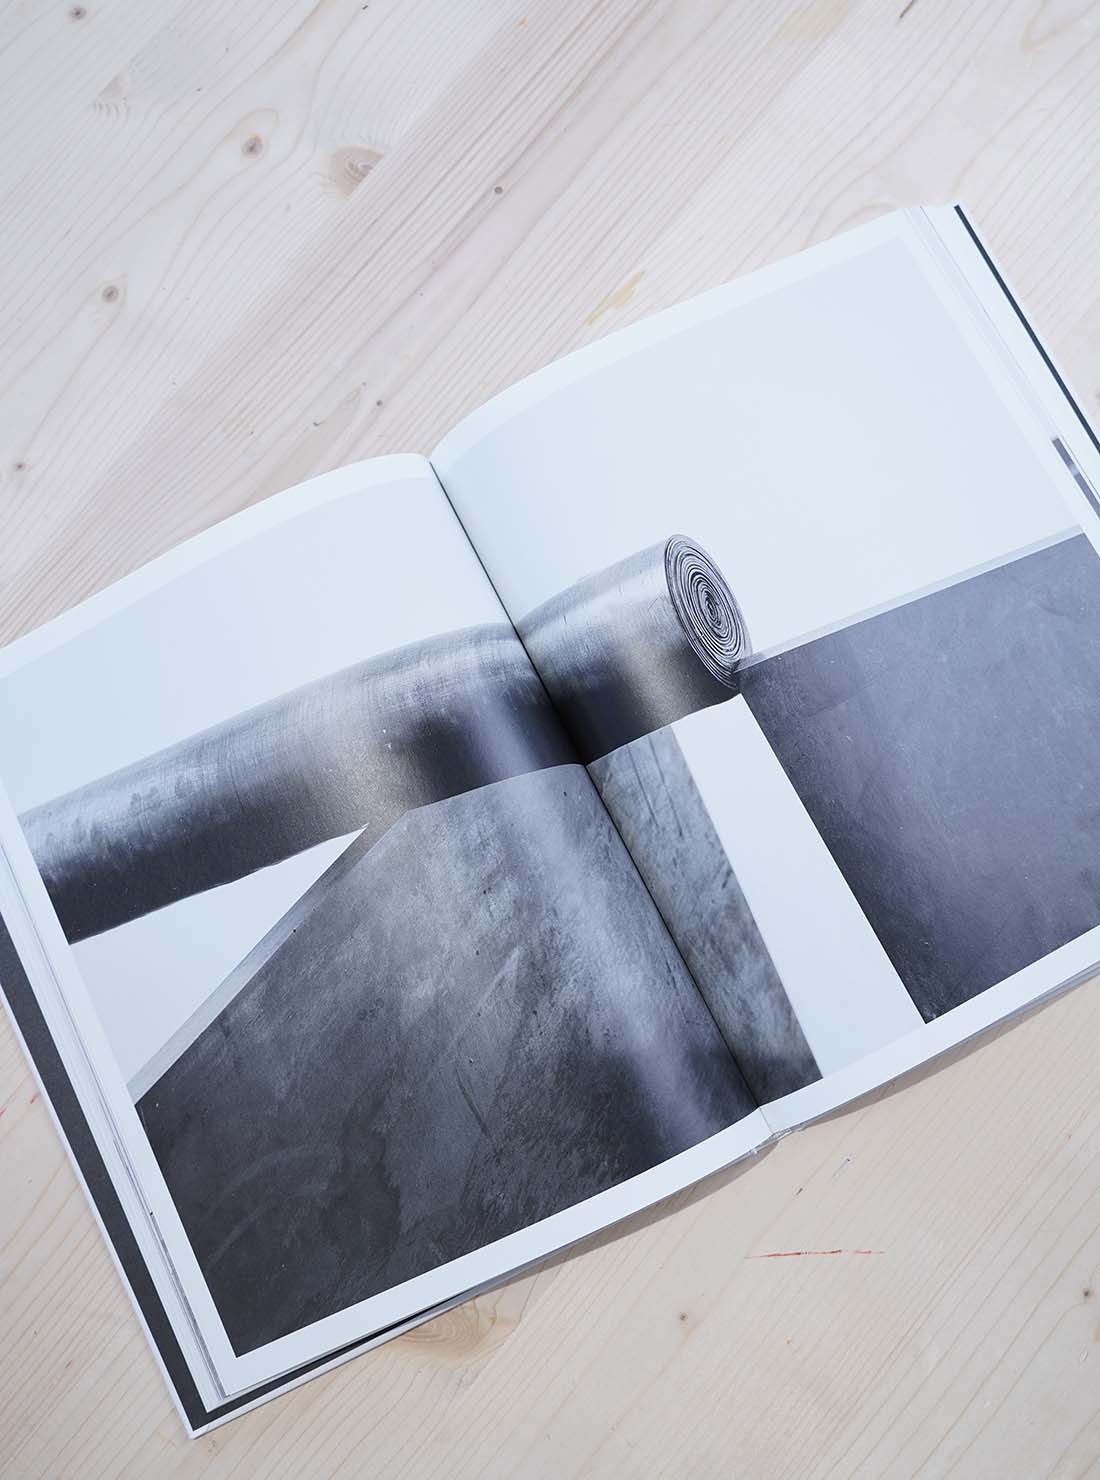 Richard Serra: Props, Films Early Works